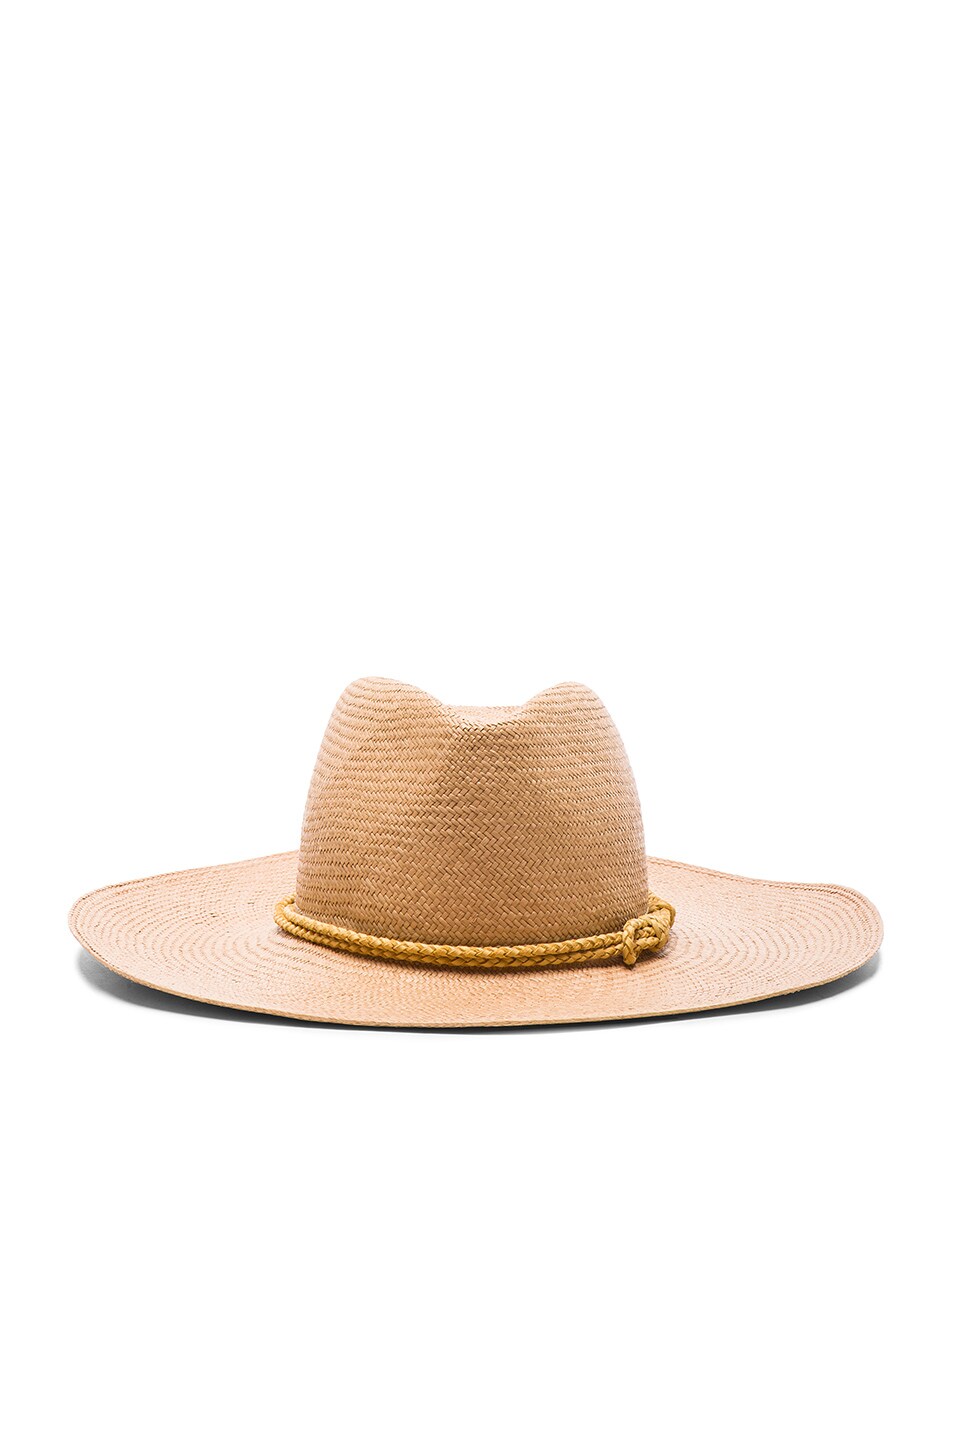 Image 1 of Ryan Roche Leather Tassel Panama Hat in Mink